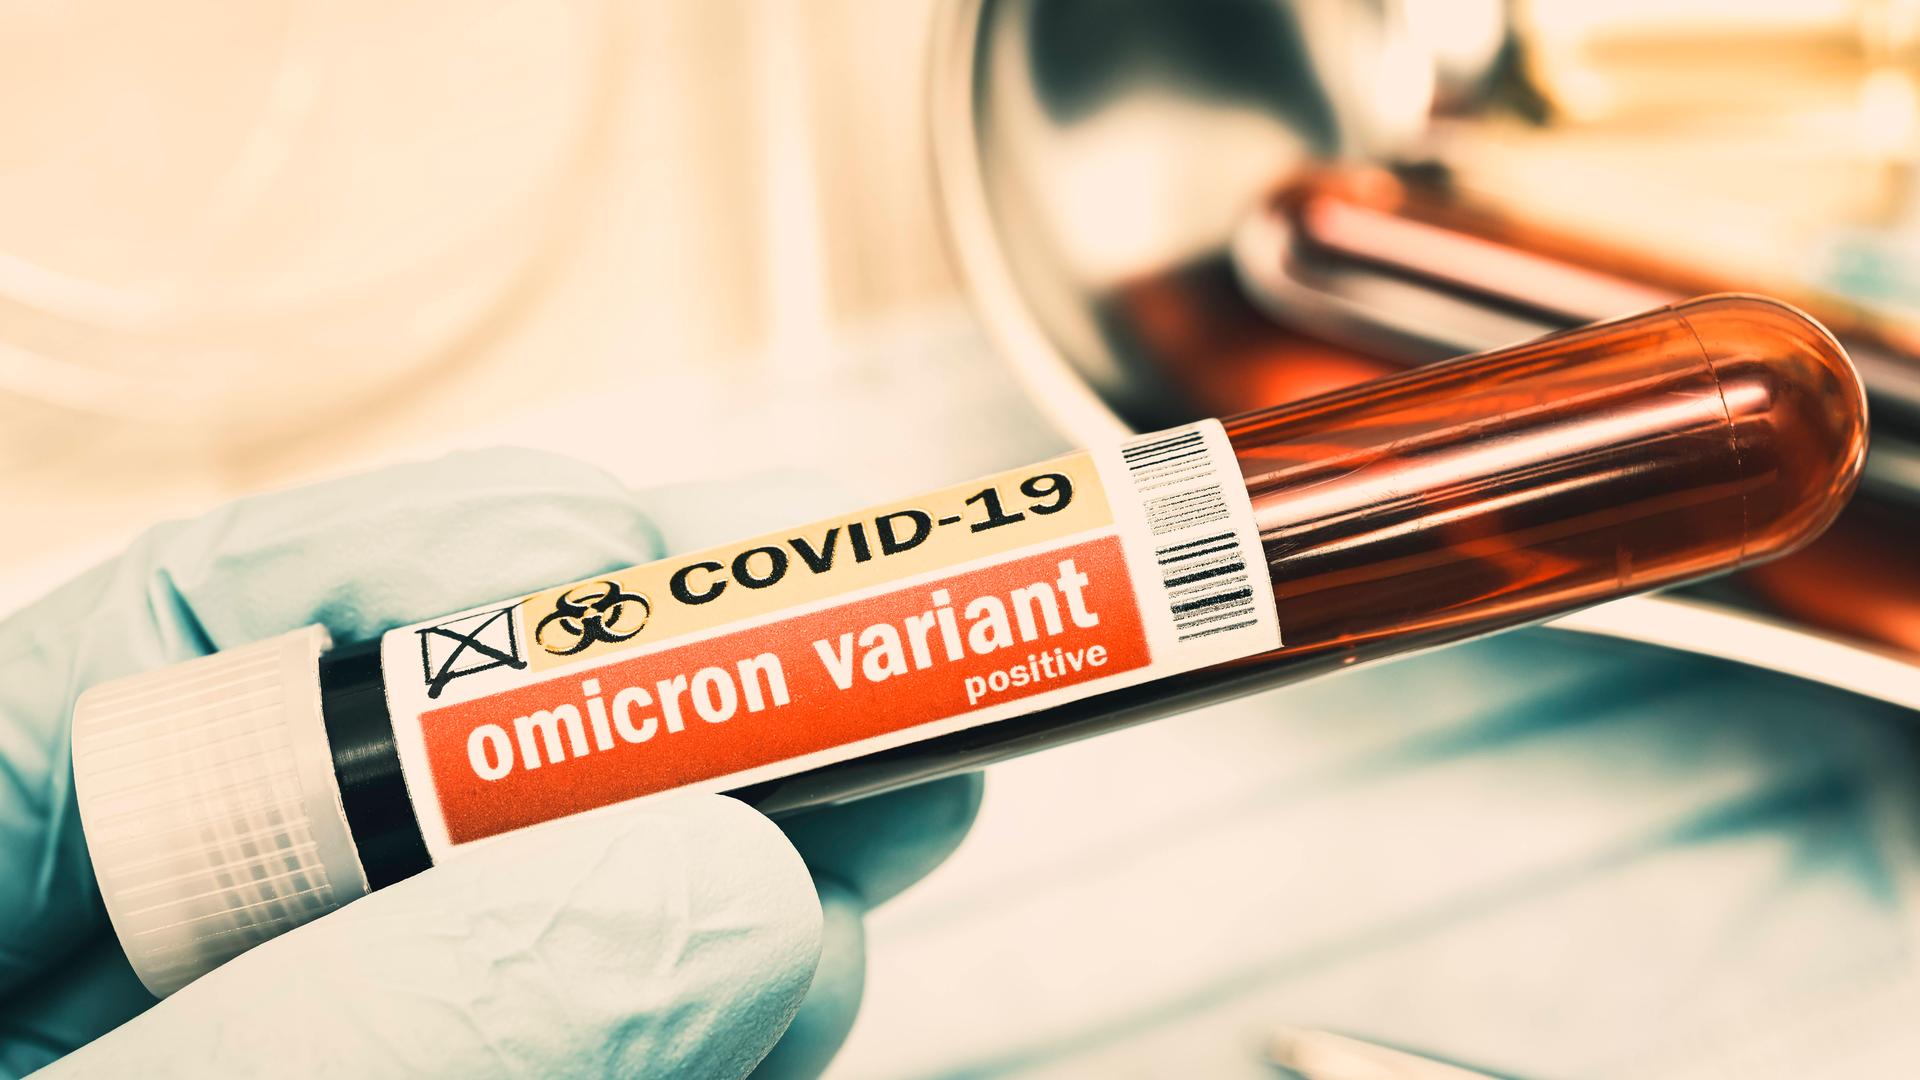 Ein Blutentnahmeröhrchen mit der Aufschrift "Omicron variant"